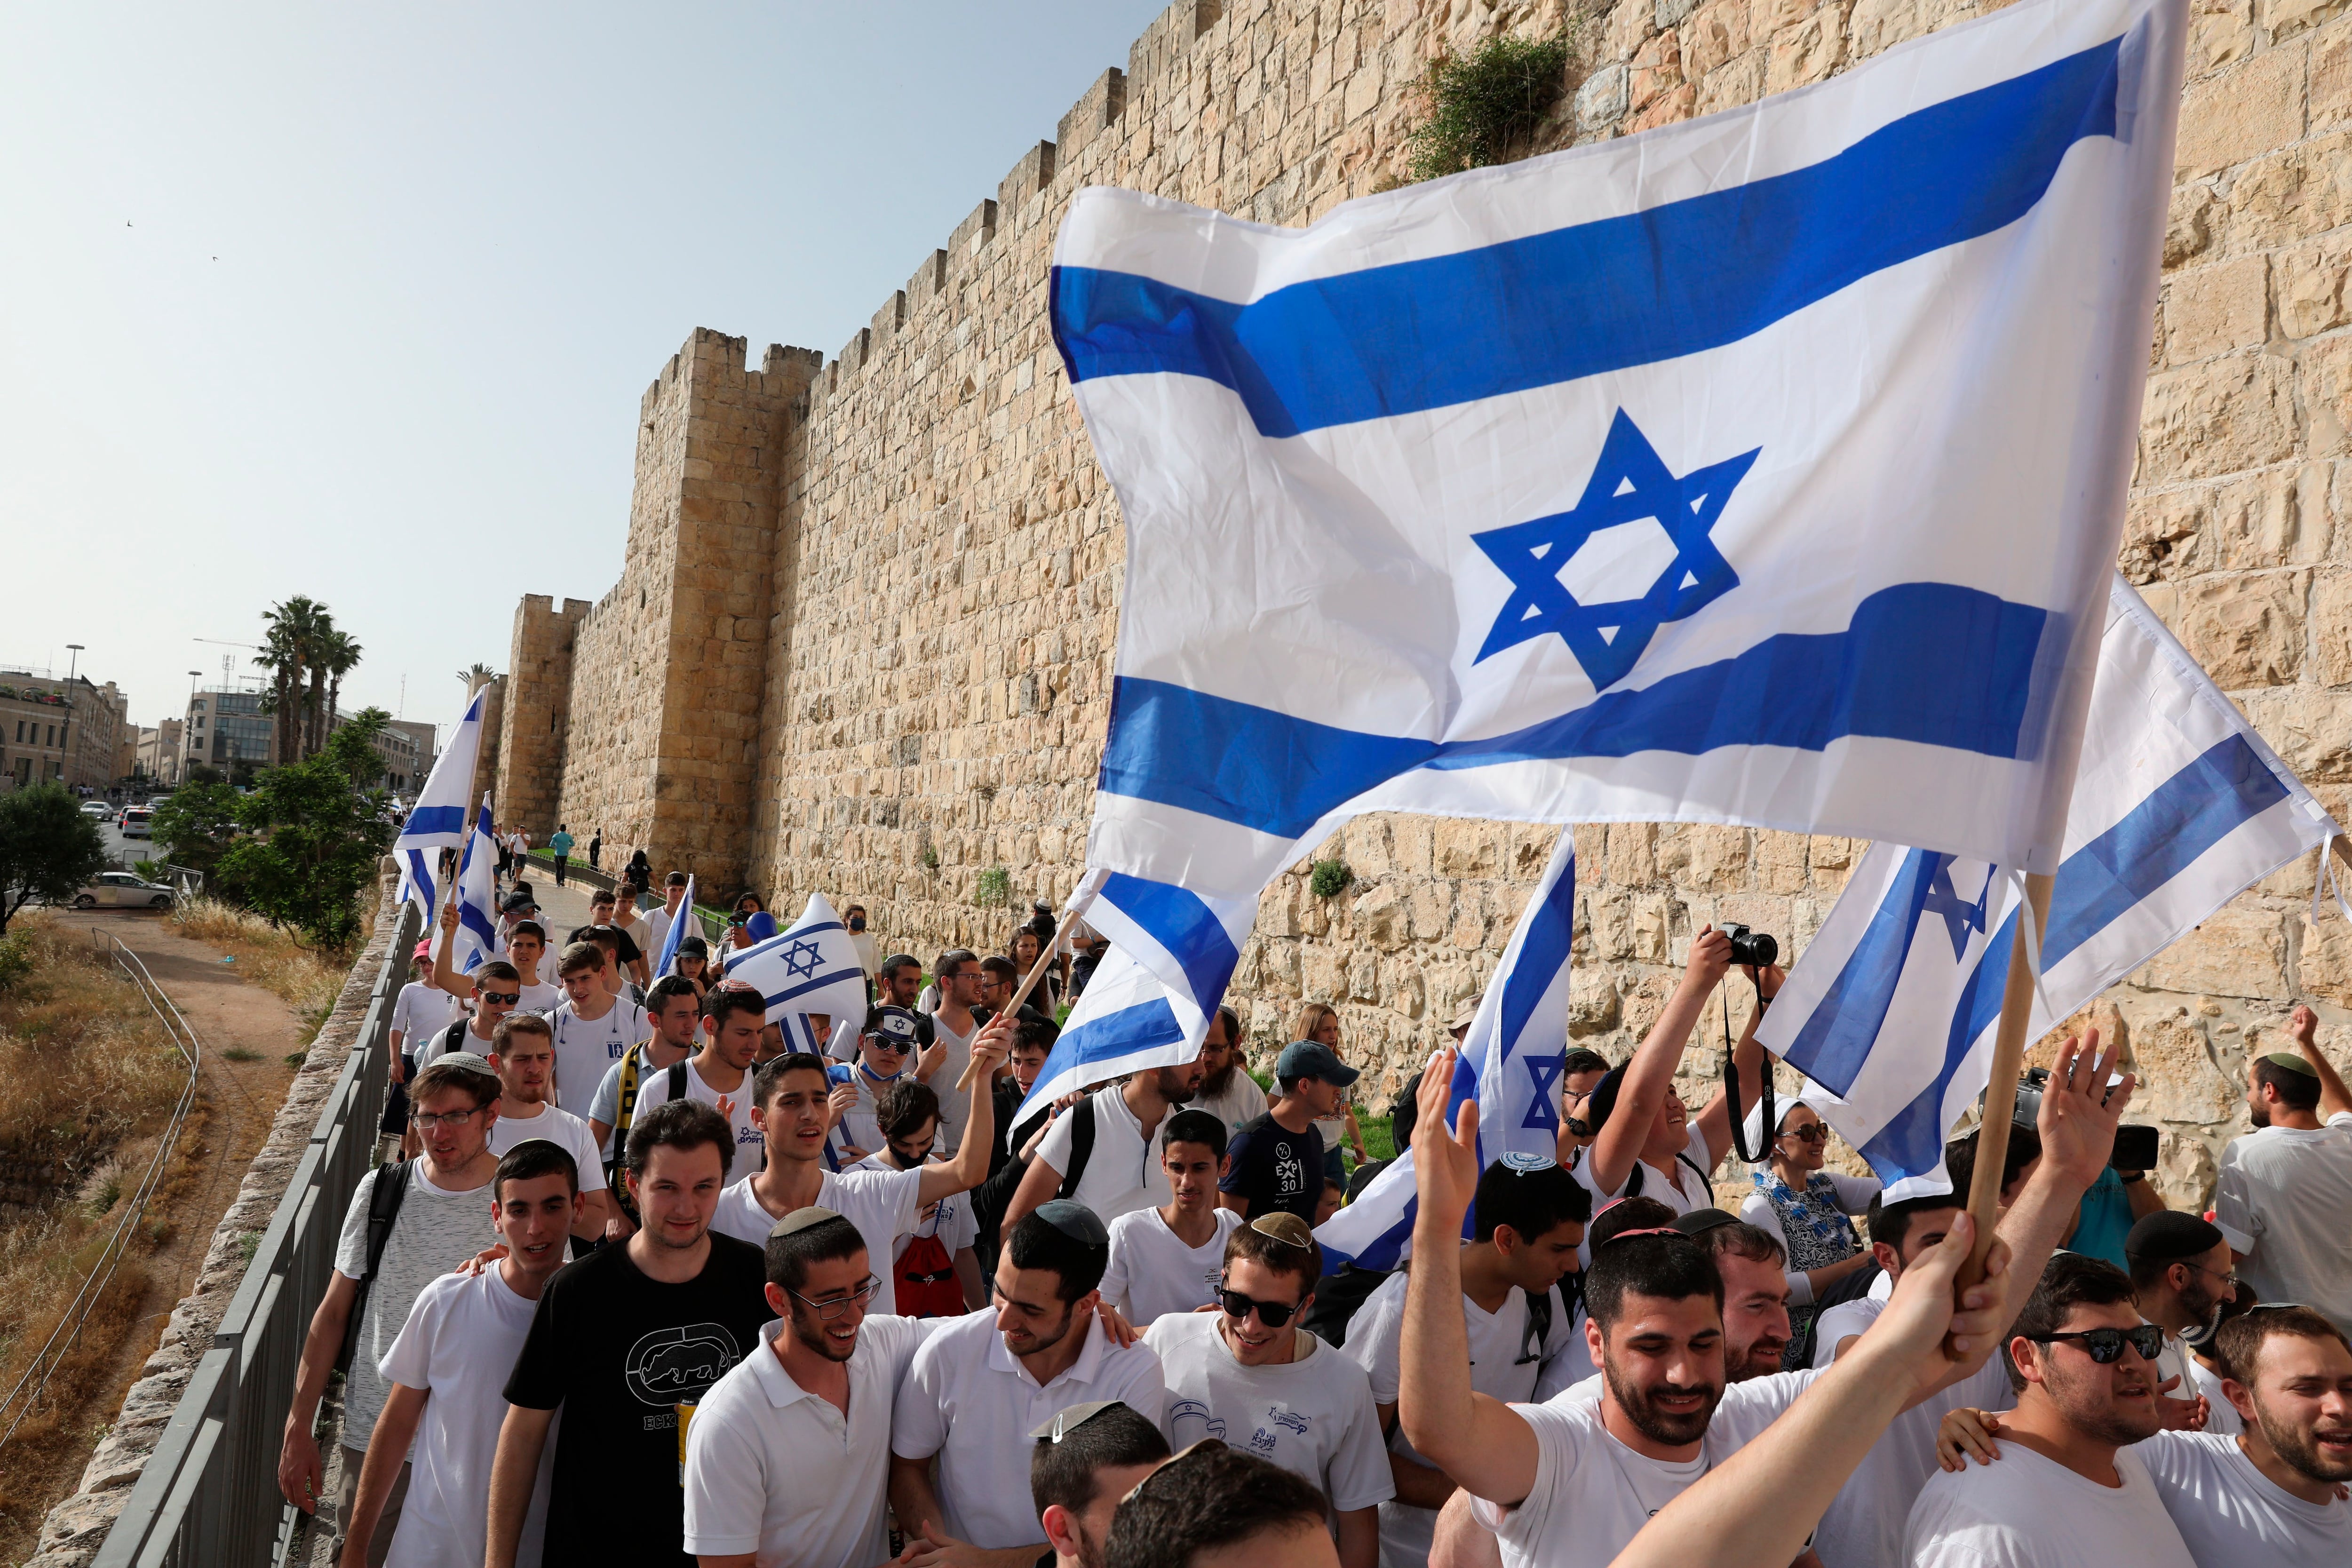 Varios israelíes se manifiestan con banderas del país este lunes en la ciudad vieja de Jerusalén. La tensión es alta en Jerusalén tras días de choques entre palestinos y la Policía israelí, que hoy podría aumentar por la conmemoración del Día de Jerusalén, en el que los israelíes celebran la reunificación de la ciudad en 1967 y que para los palestinos supuso el inicio de la ocupación.EFE/ABIR SULTAN
